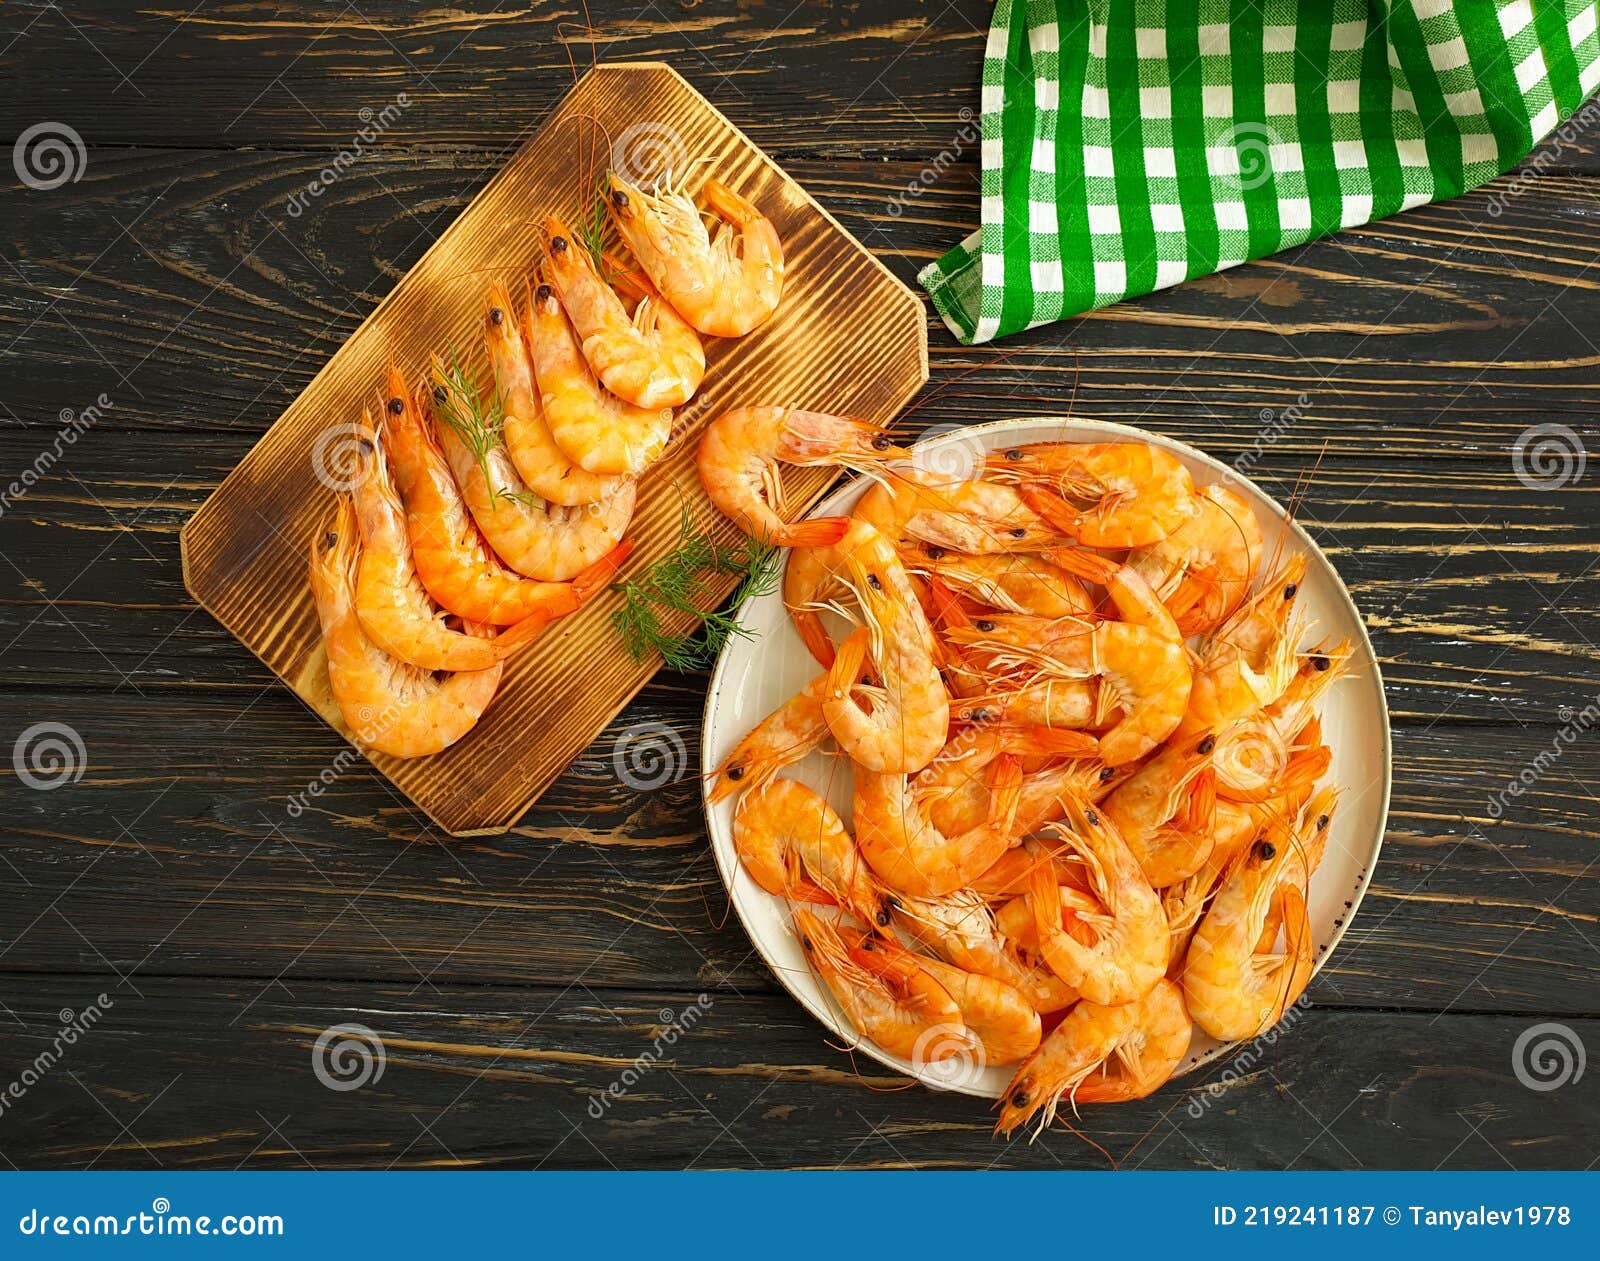 boiled shrimp plate snack   dinner nutrition on  wooden   backgroundn gourmet